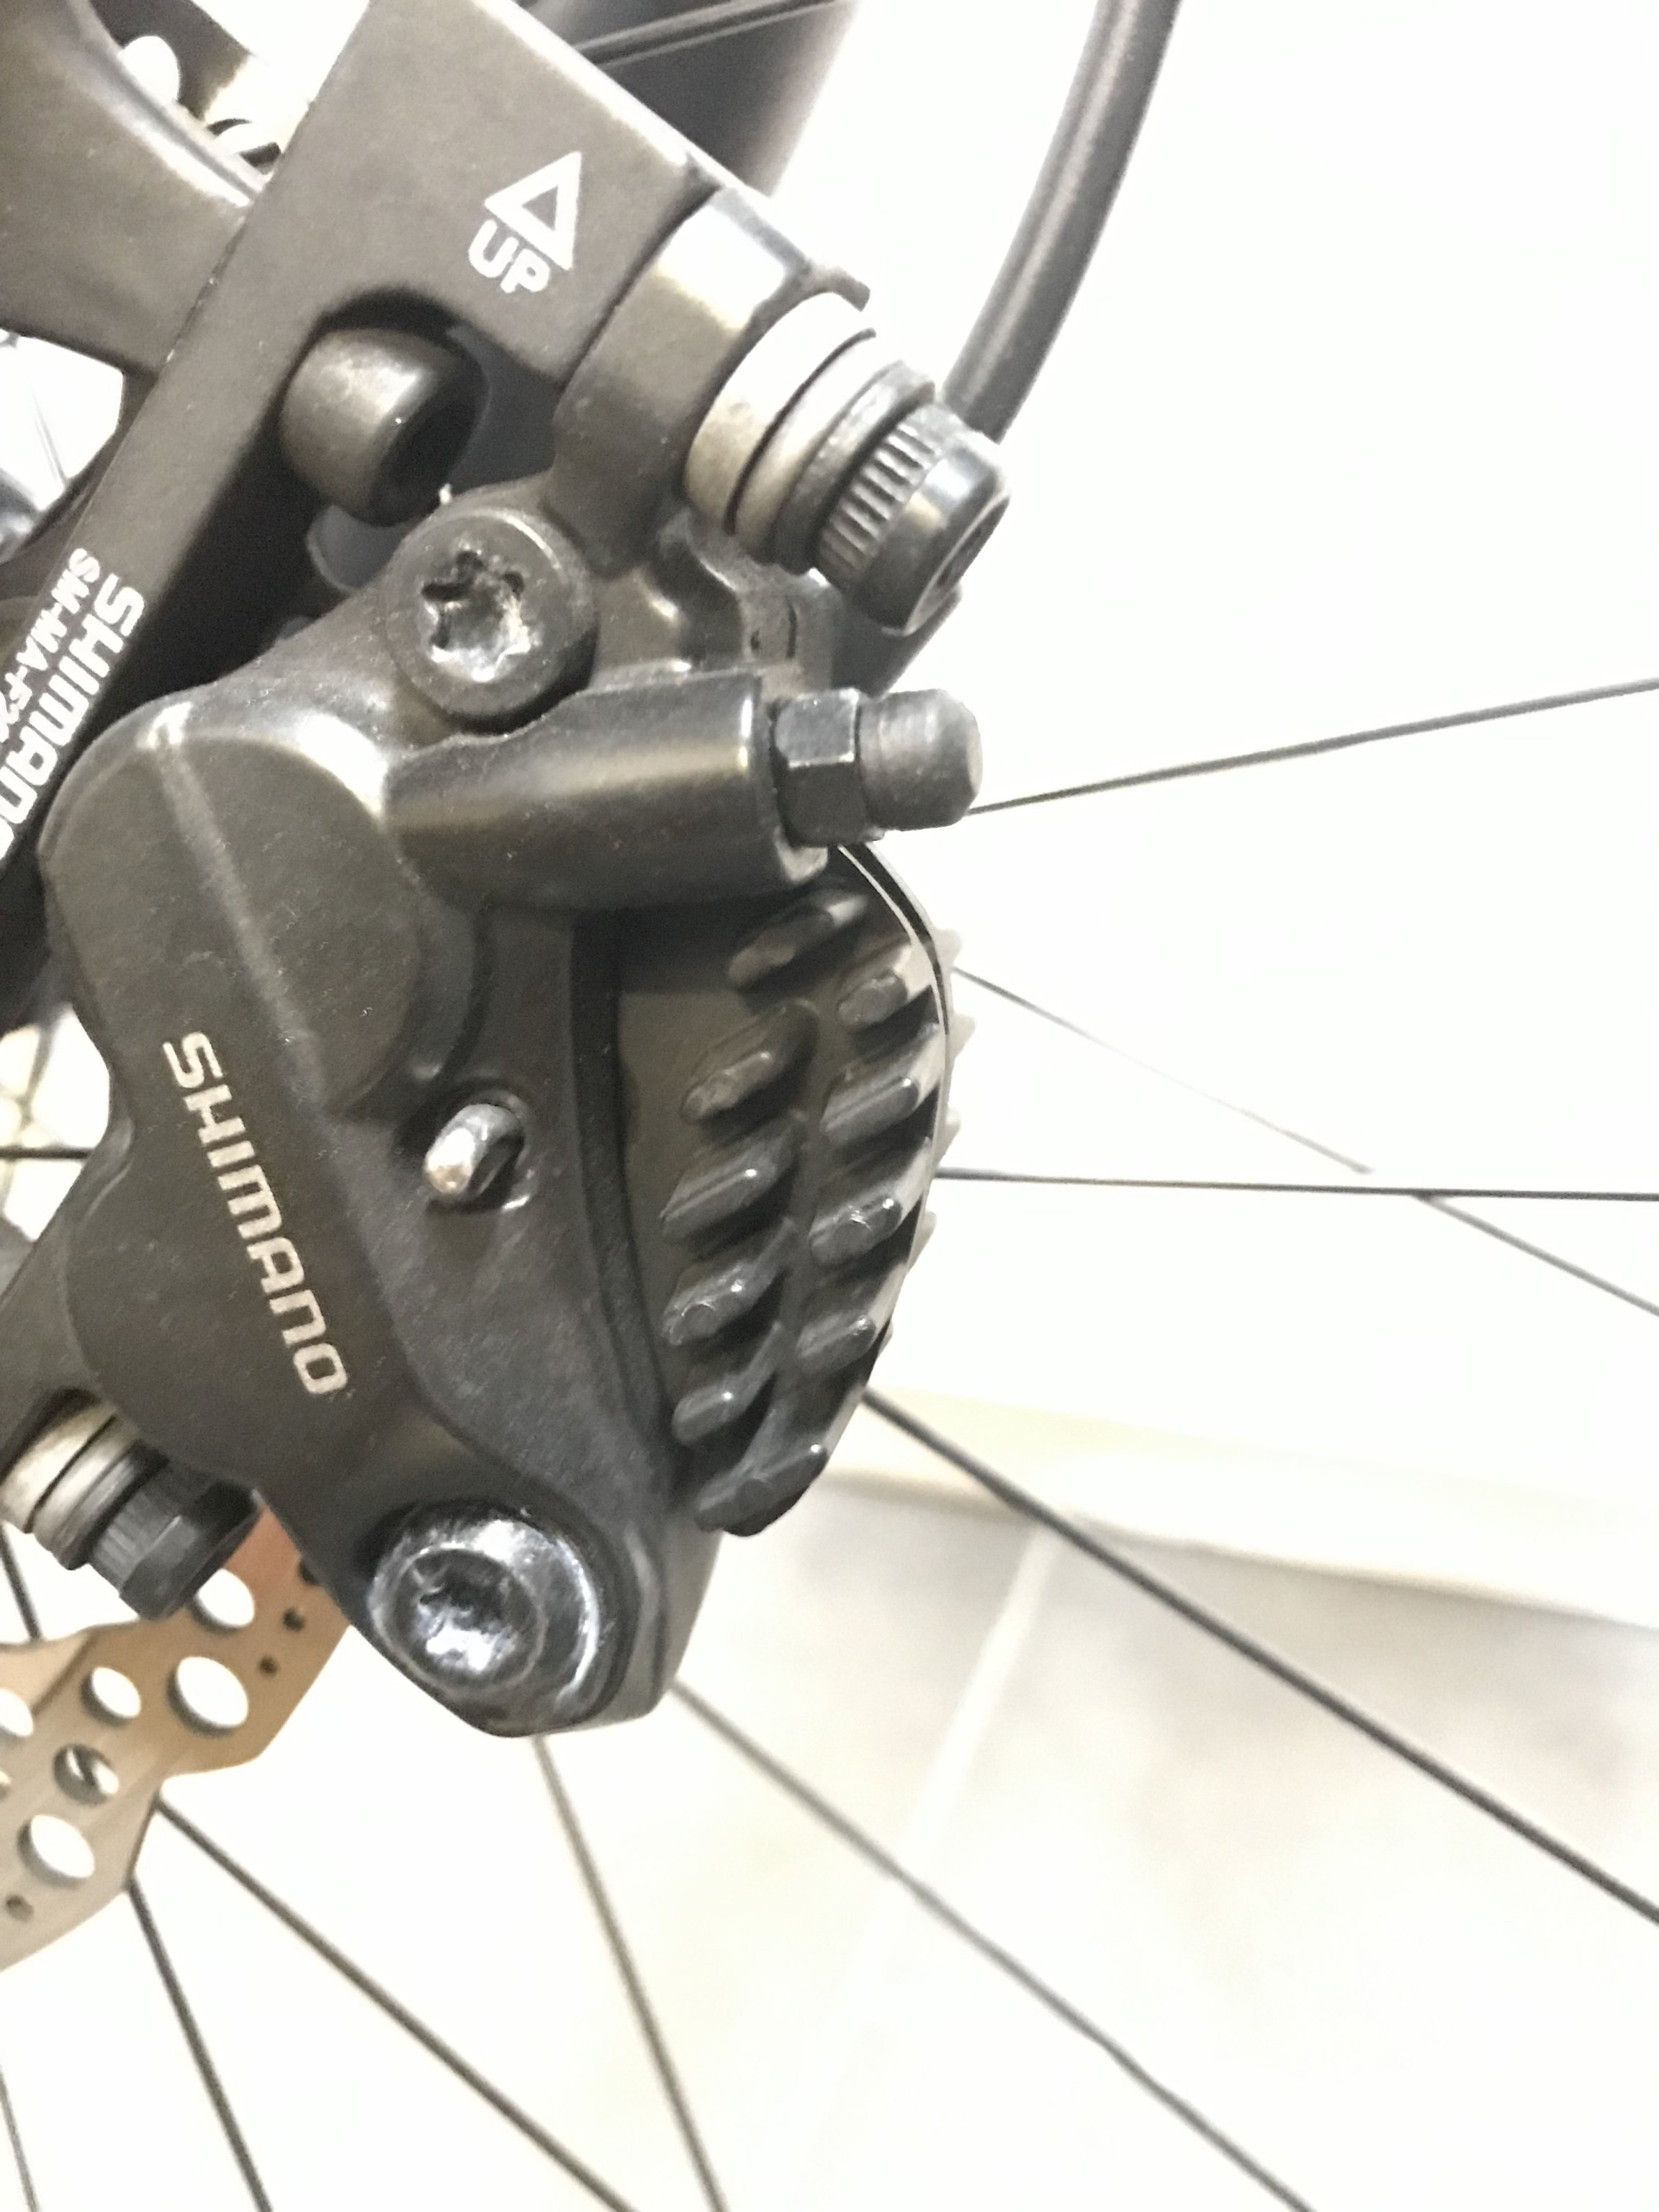 Erfahrungen mit Shimano BR-MT520 4 Kolben Bremssattel? | Seite 6 |  MTB-News.de | IBC Mountainbike Forum